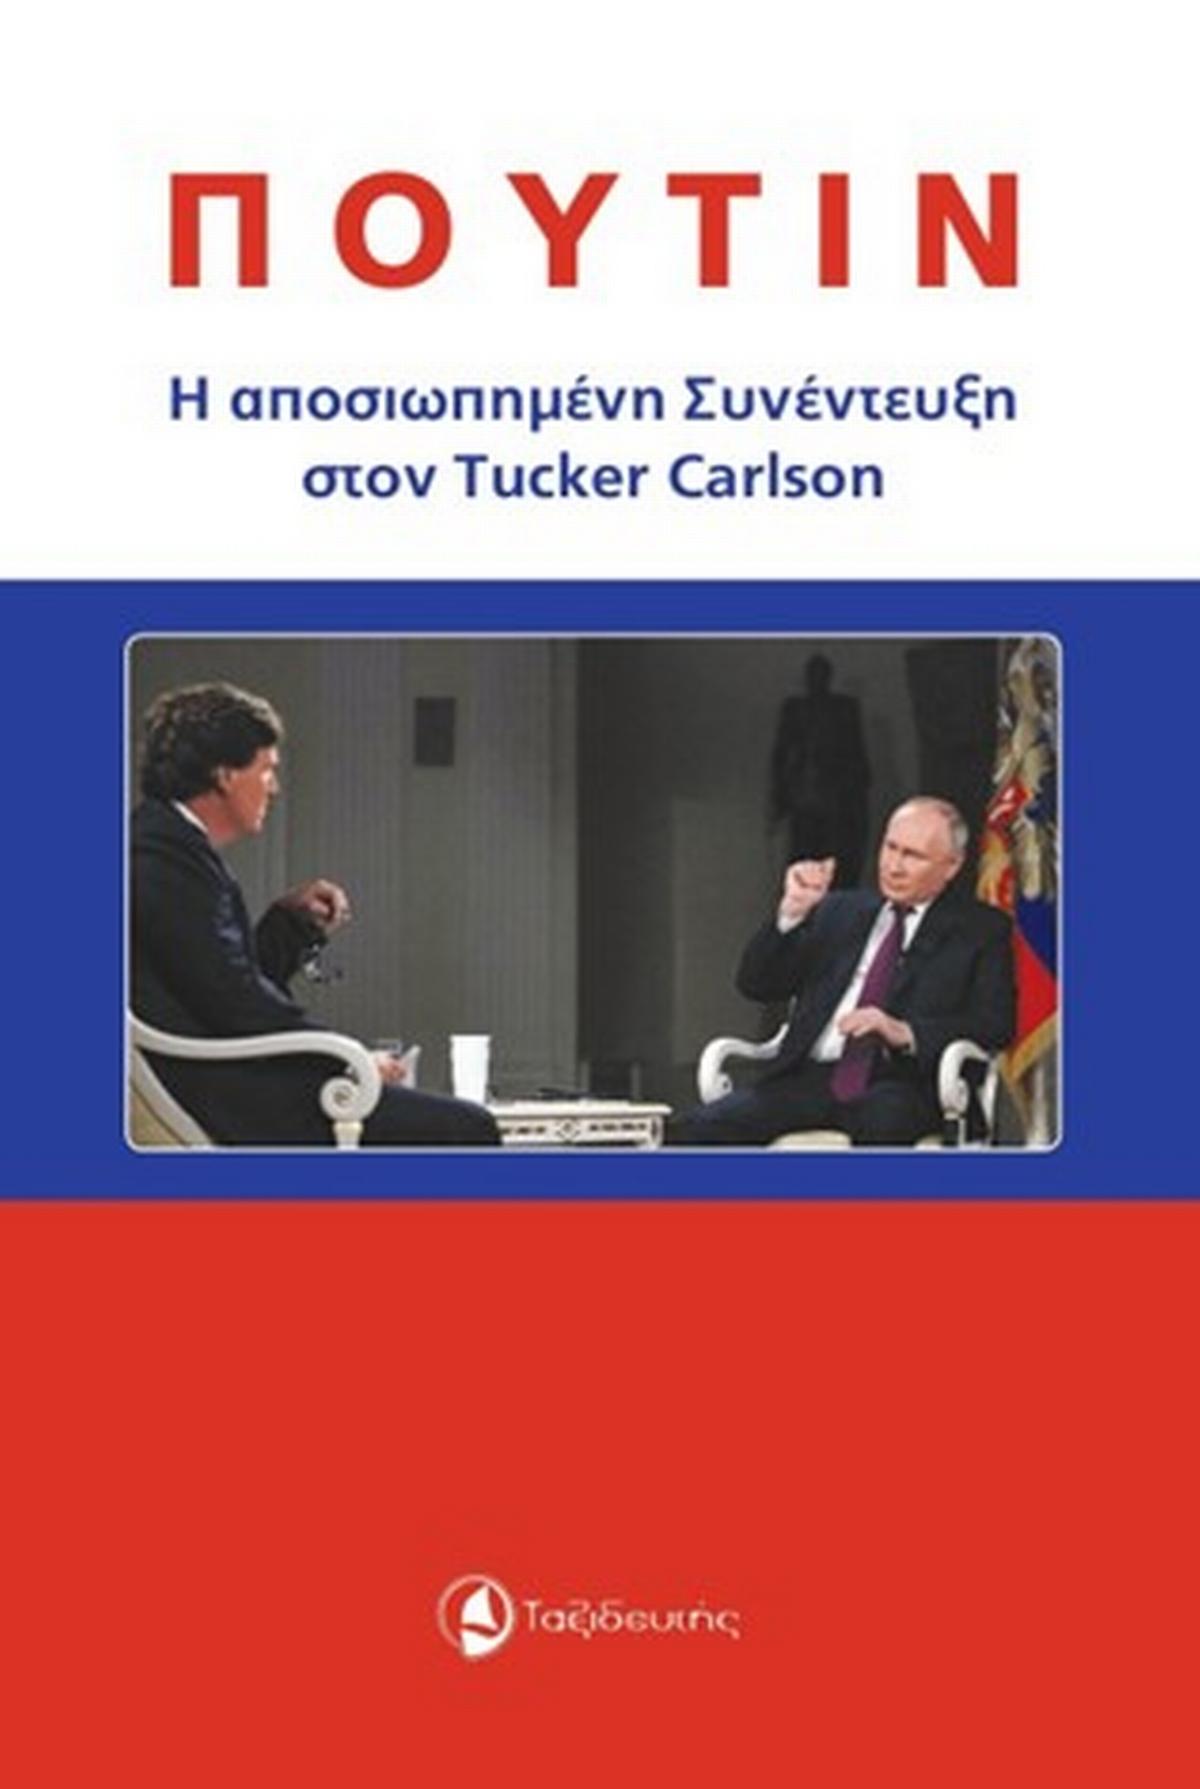 Πούτιν: Η αποσιωπημένη συνέντευξη στον Tucker Carlson